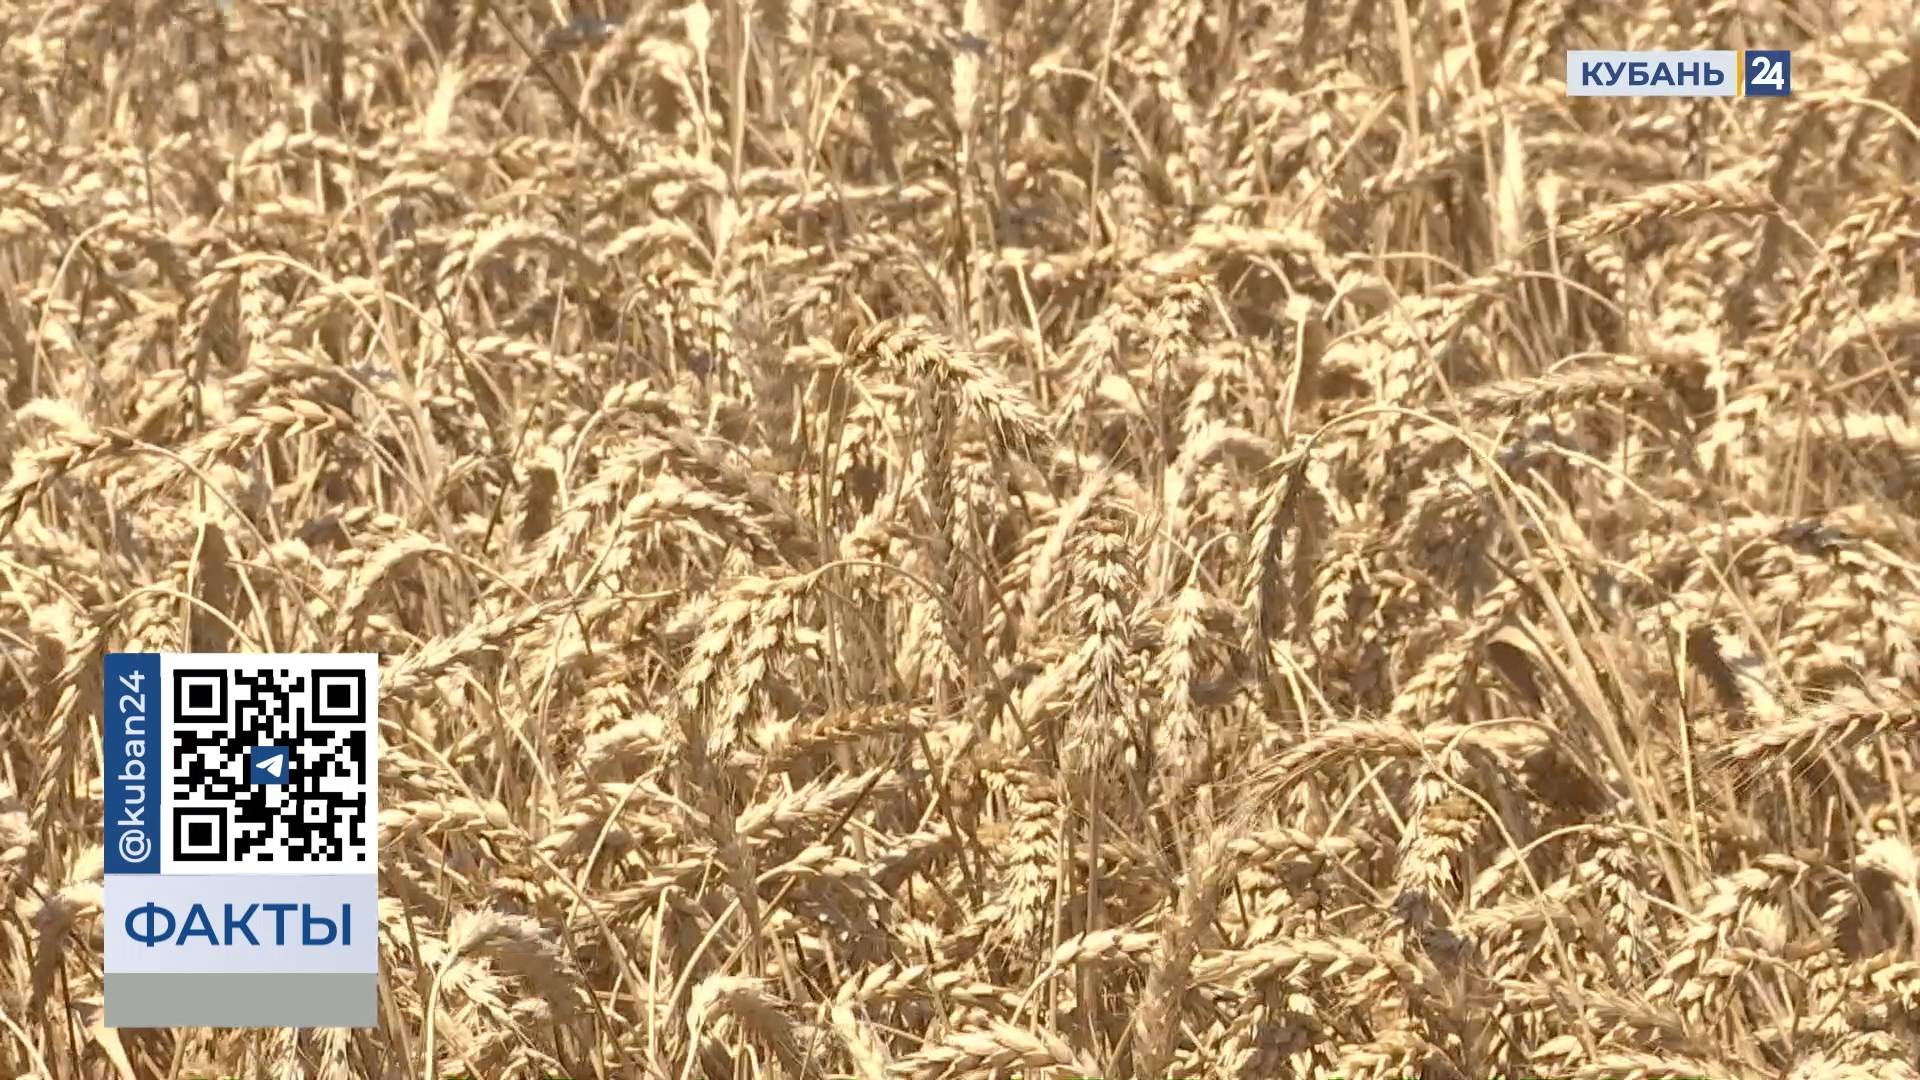 Кубанские аграрии установили новый рекорд России по урожайности озимой пшеницы